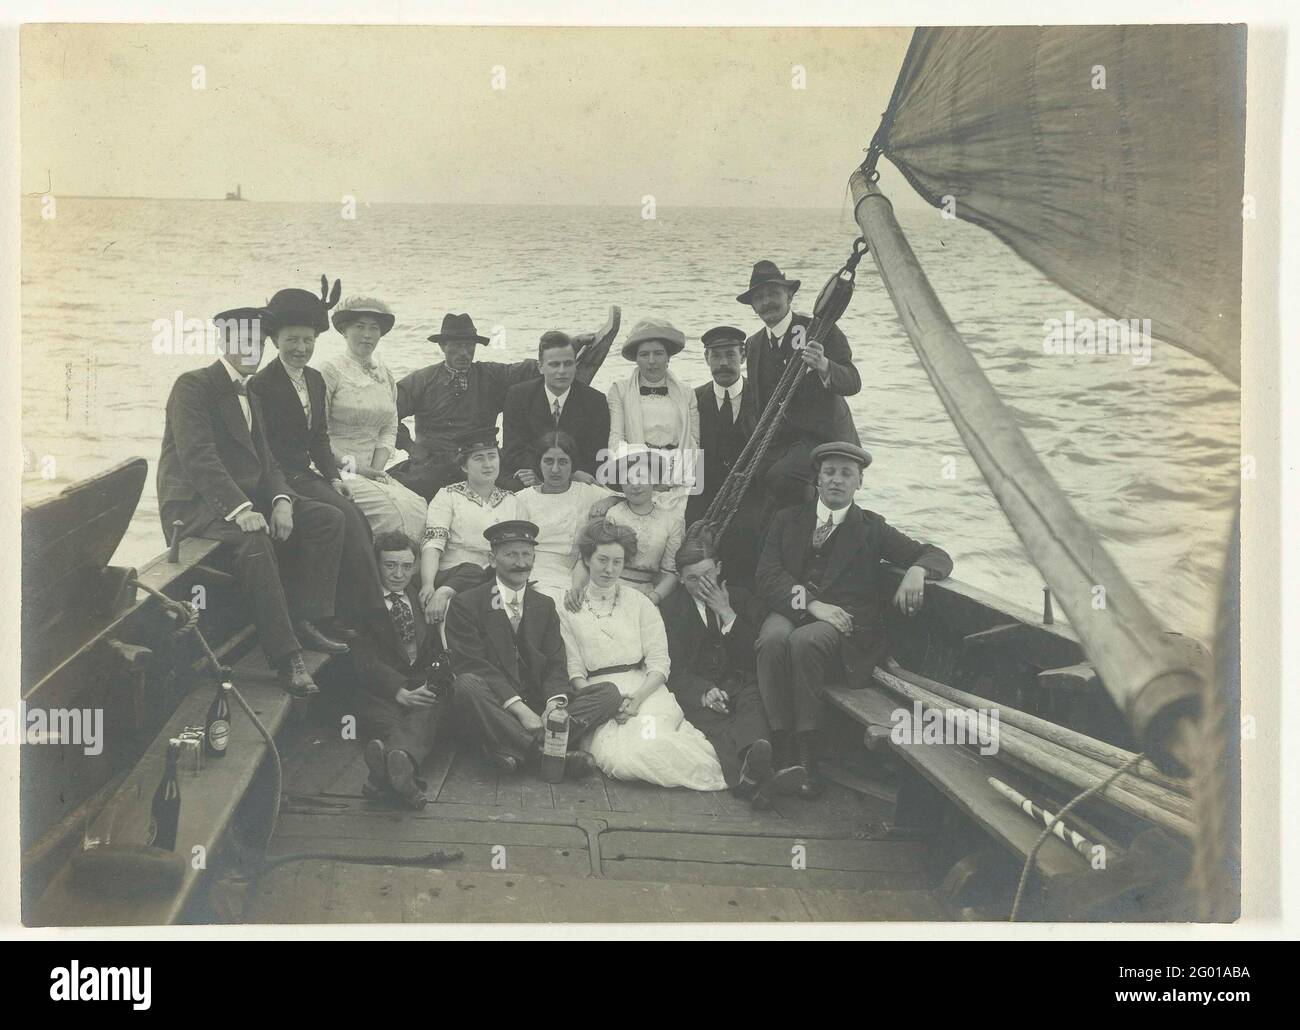 Gruppenportrait einer Gesellschaft auf einem Segelschiff. Sieben Frauen und neun Männer sitzen auf dem Heck eines Segelschiffes. Links auf der Couch Flaschen Bier. Stockfoto